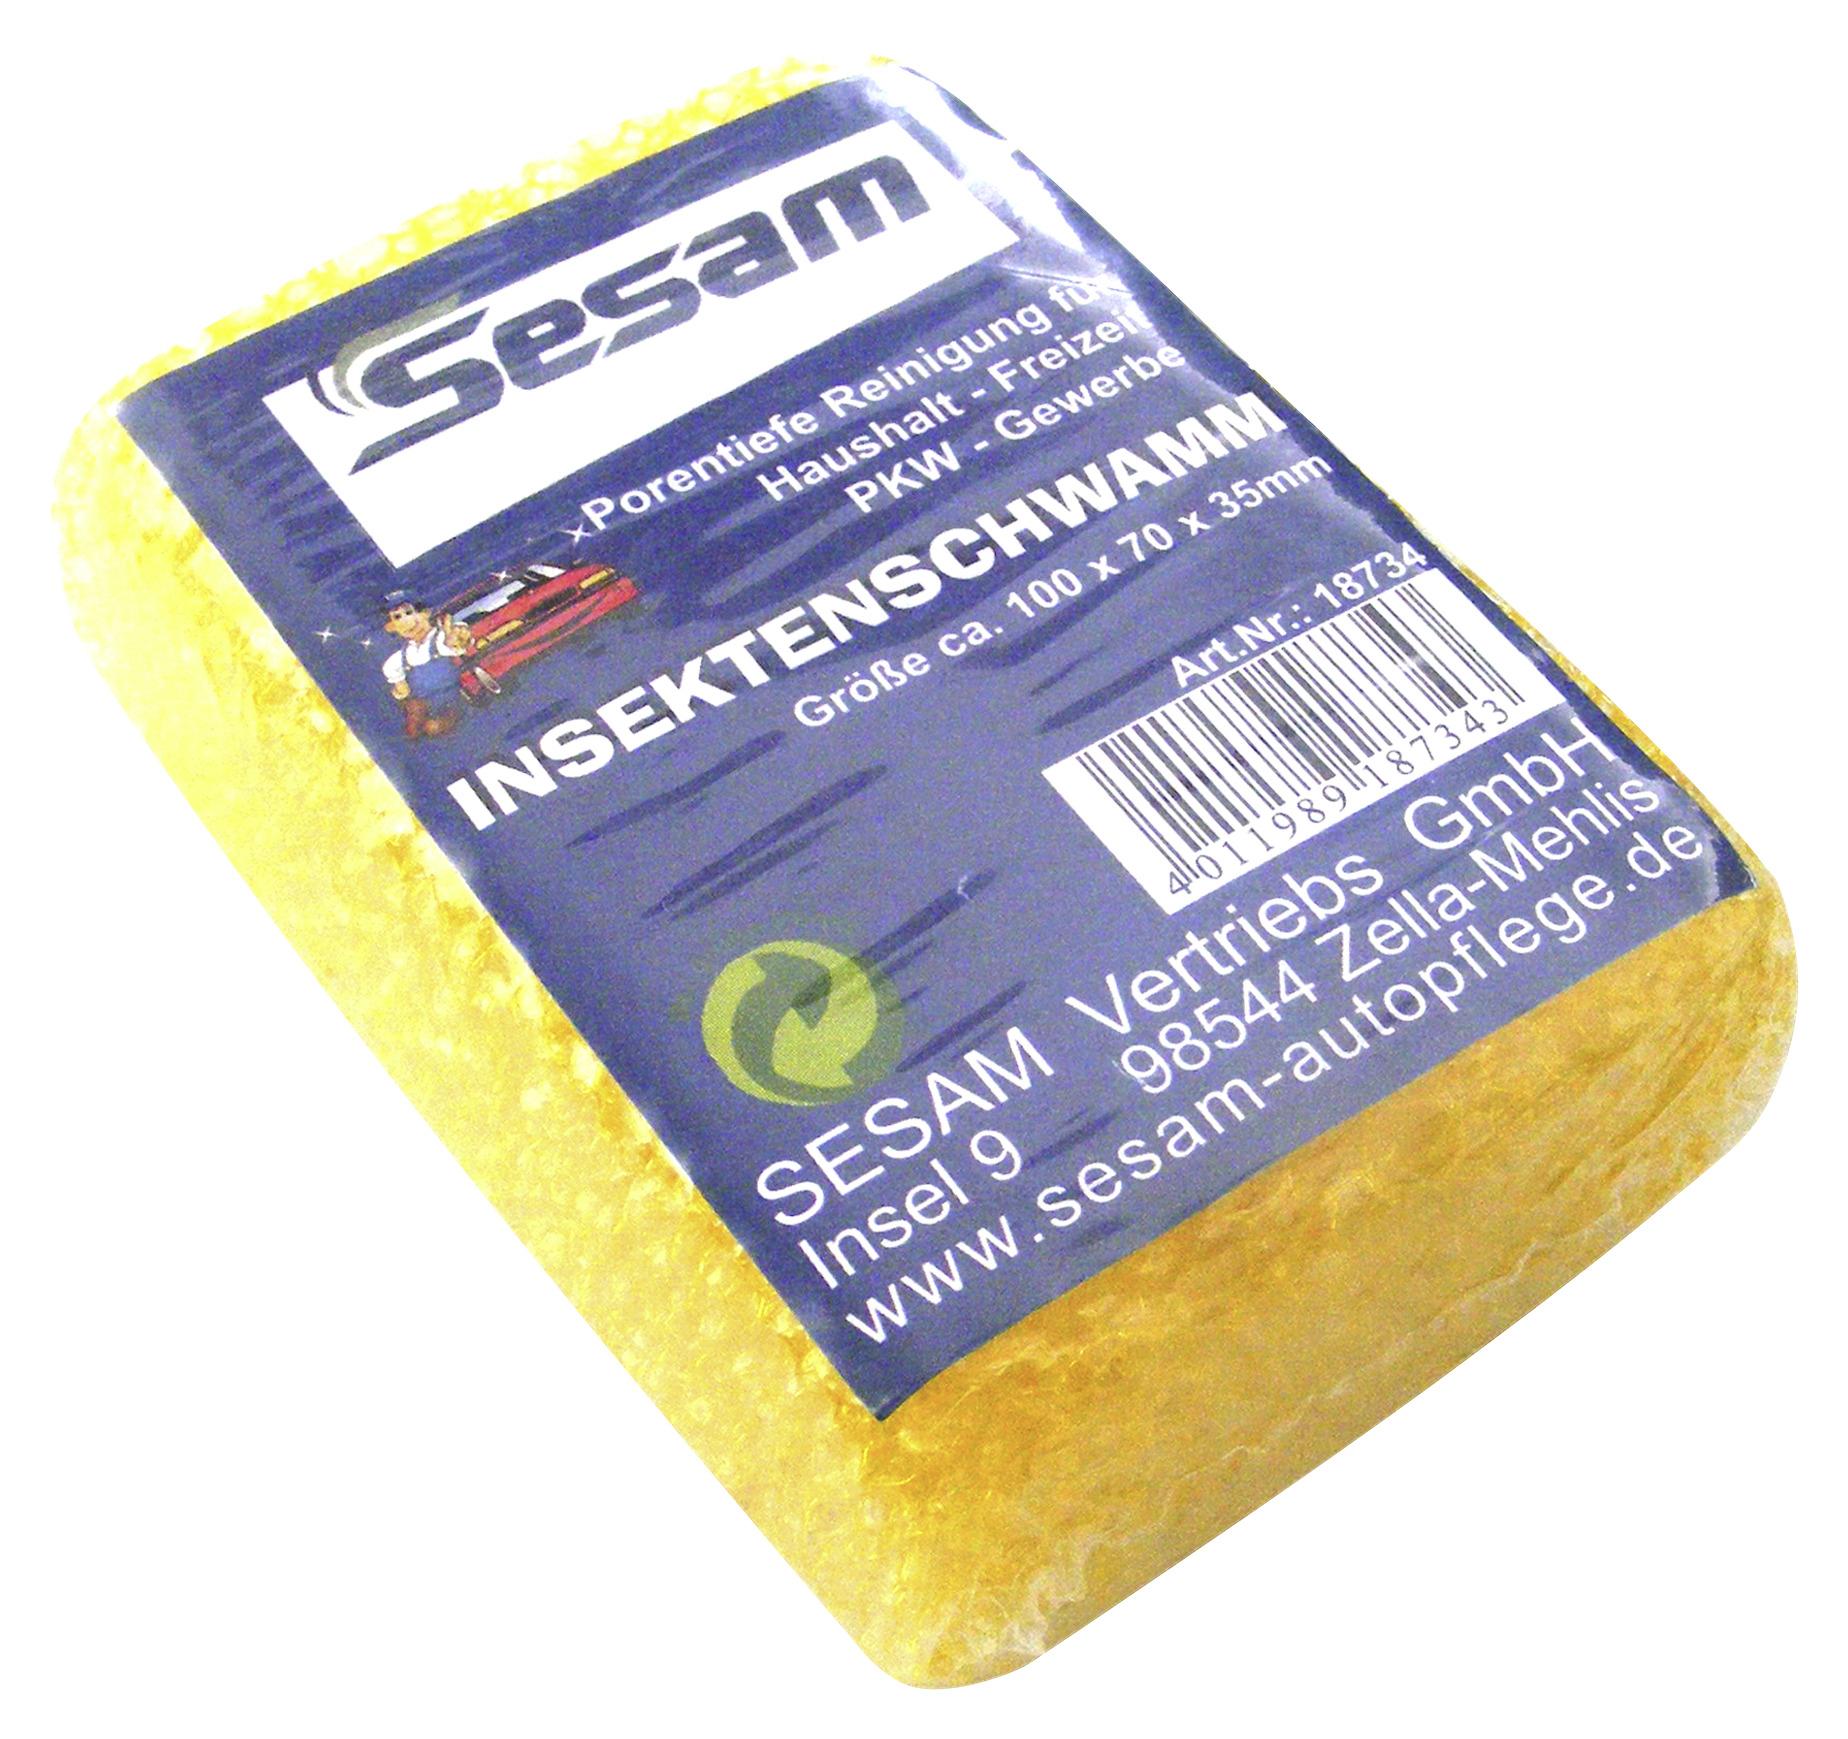 Autoschwamm Sesam 10x4x7 cm Beideseitig Verwendbar - Gelb, MODERN, Textil (10/4/7cm)